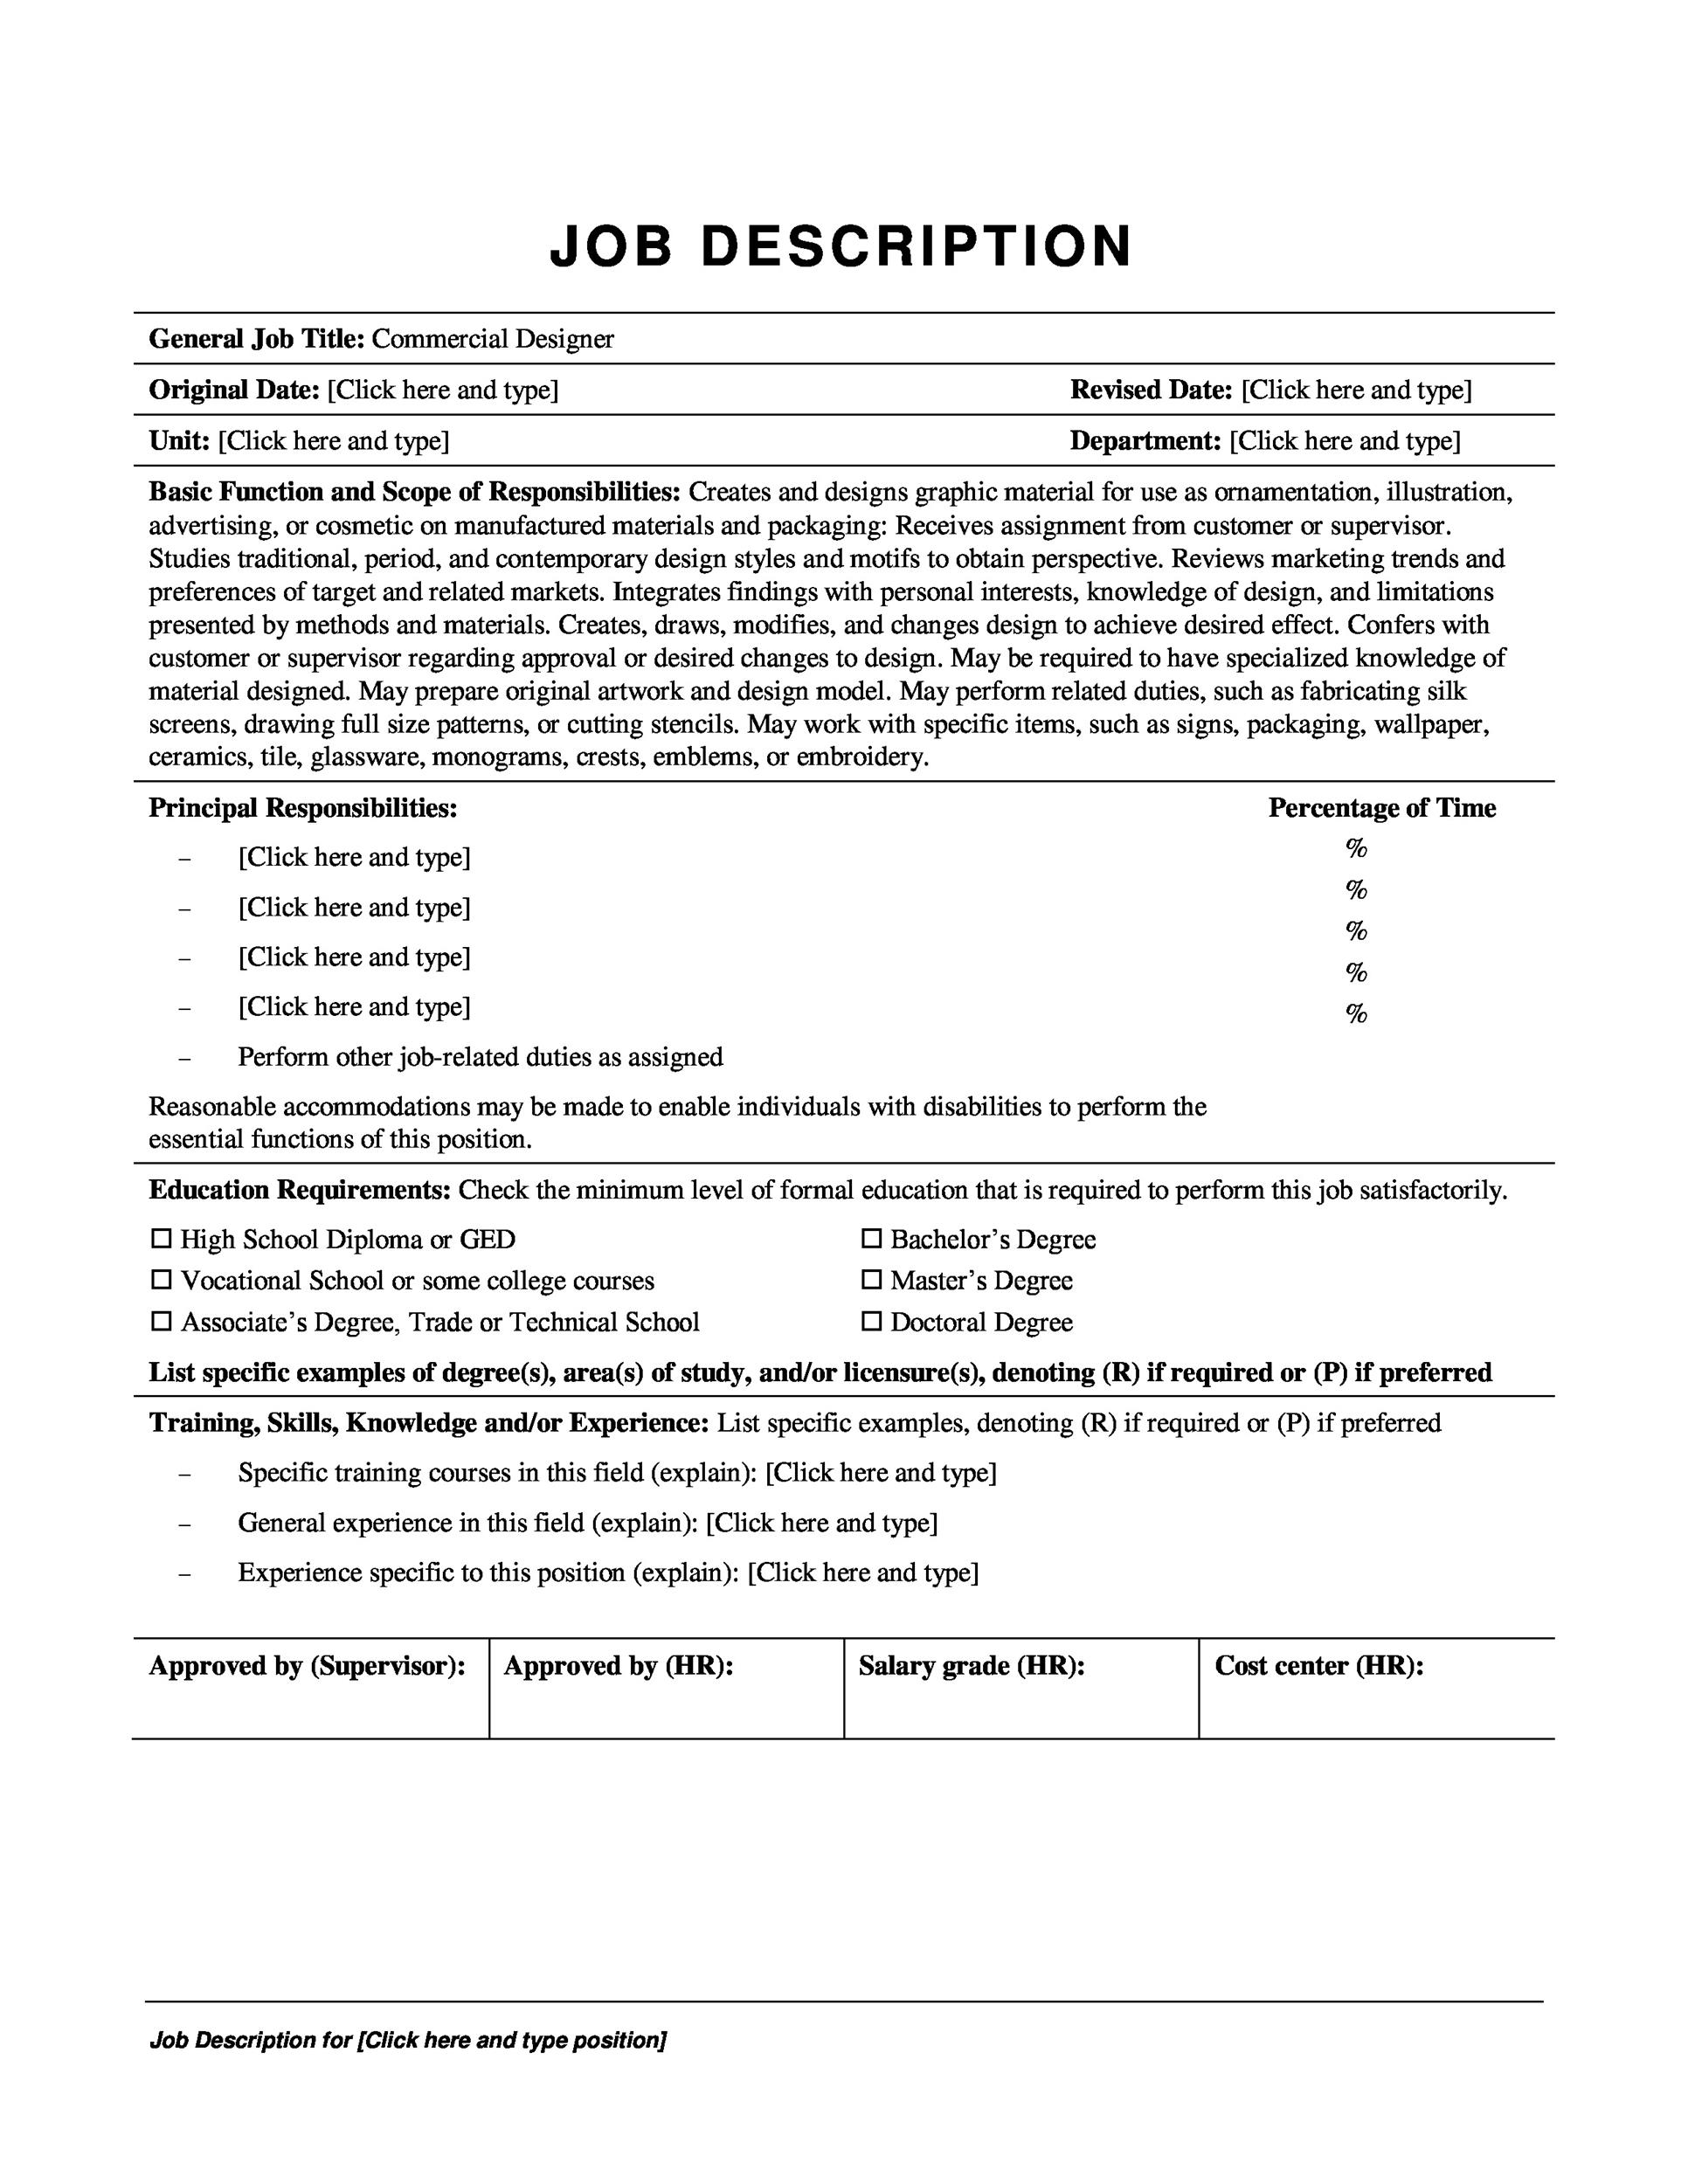 47-job-description-templates-examples-templatelab